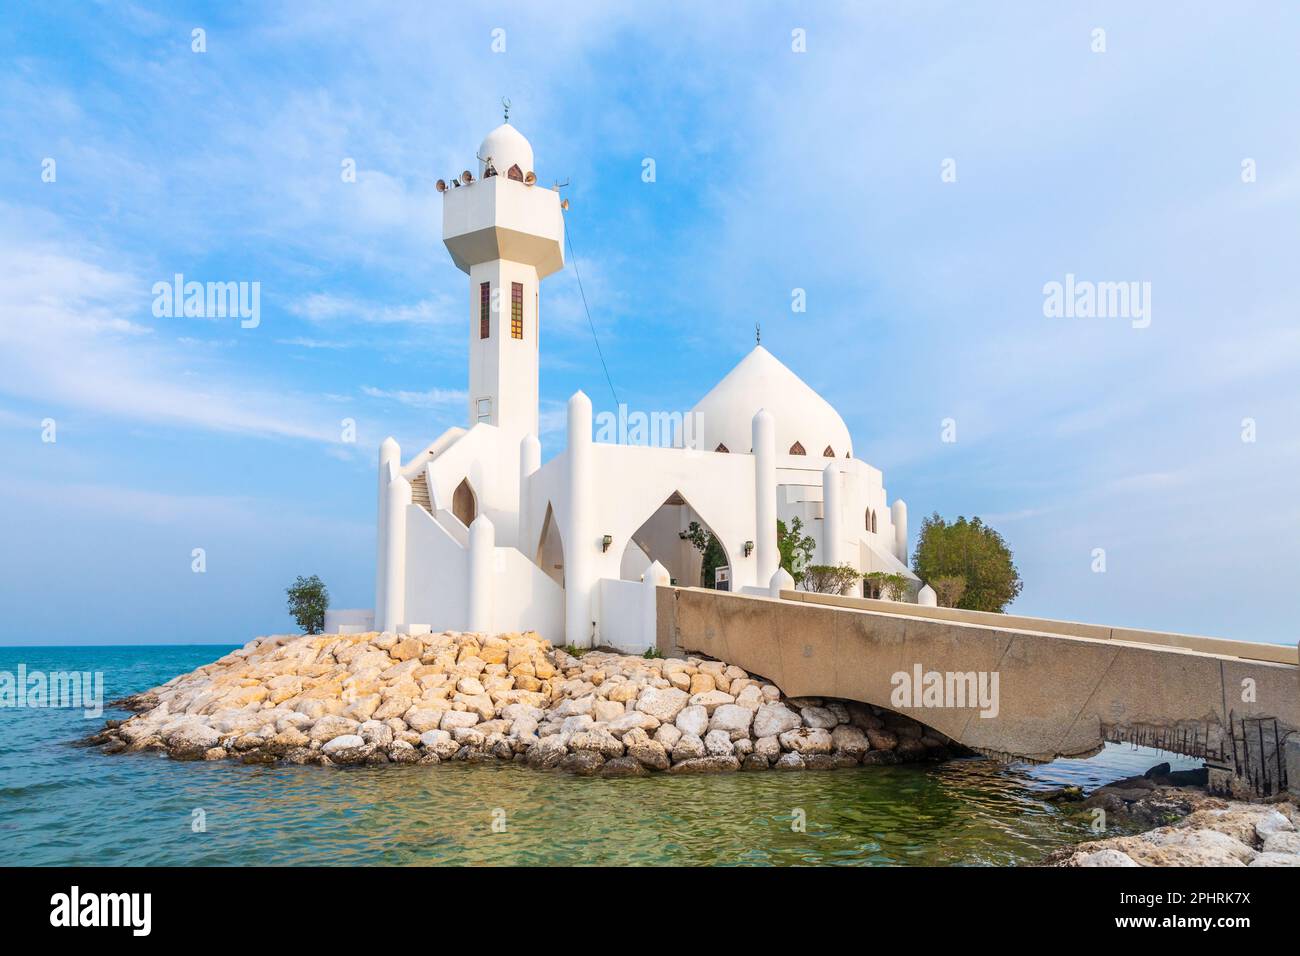 White Salem Bin Laden Moschea costruita sull'isola con il mare sullo sfondo, al Khobar, Arabia Saudita Foto Stock